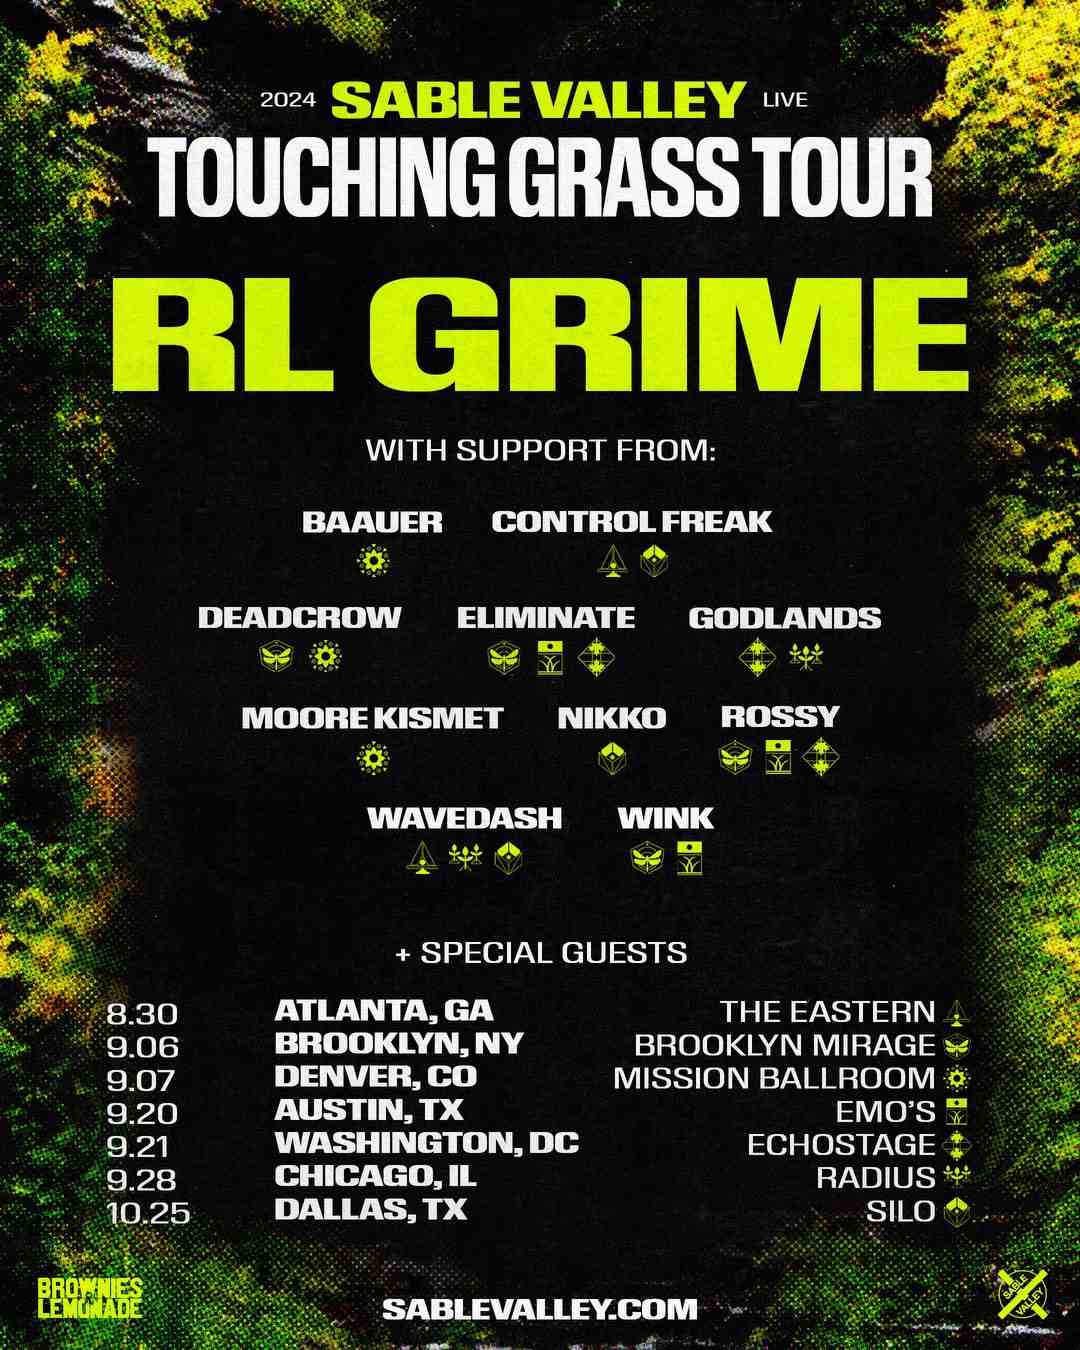 rl-grime-touching-grass-tour-2024-09-20-austin